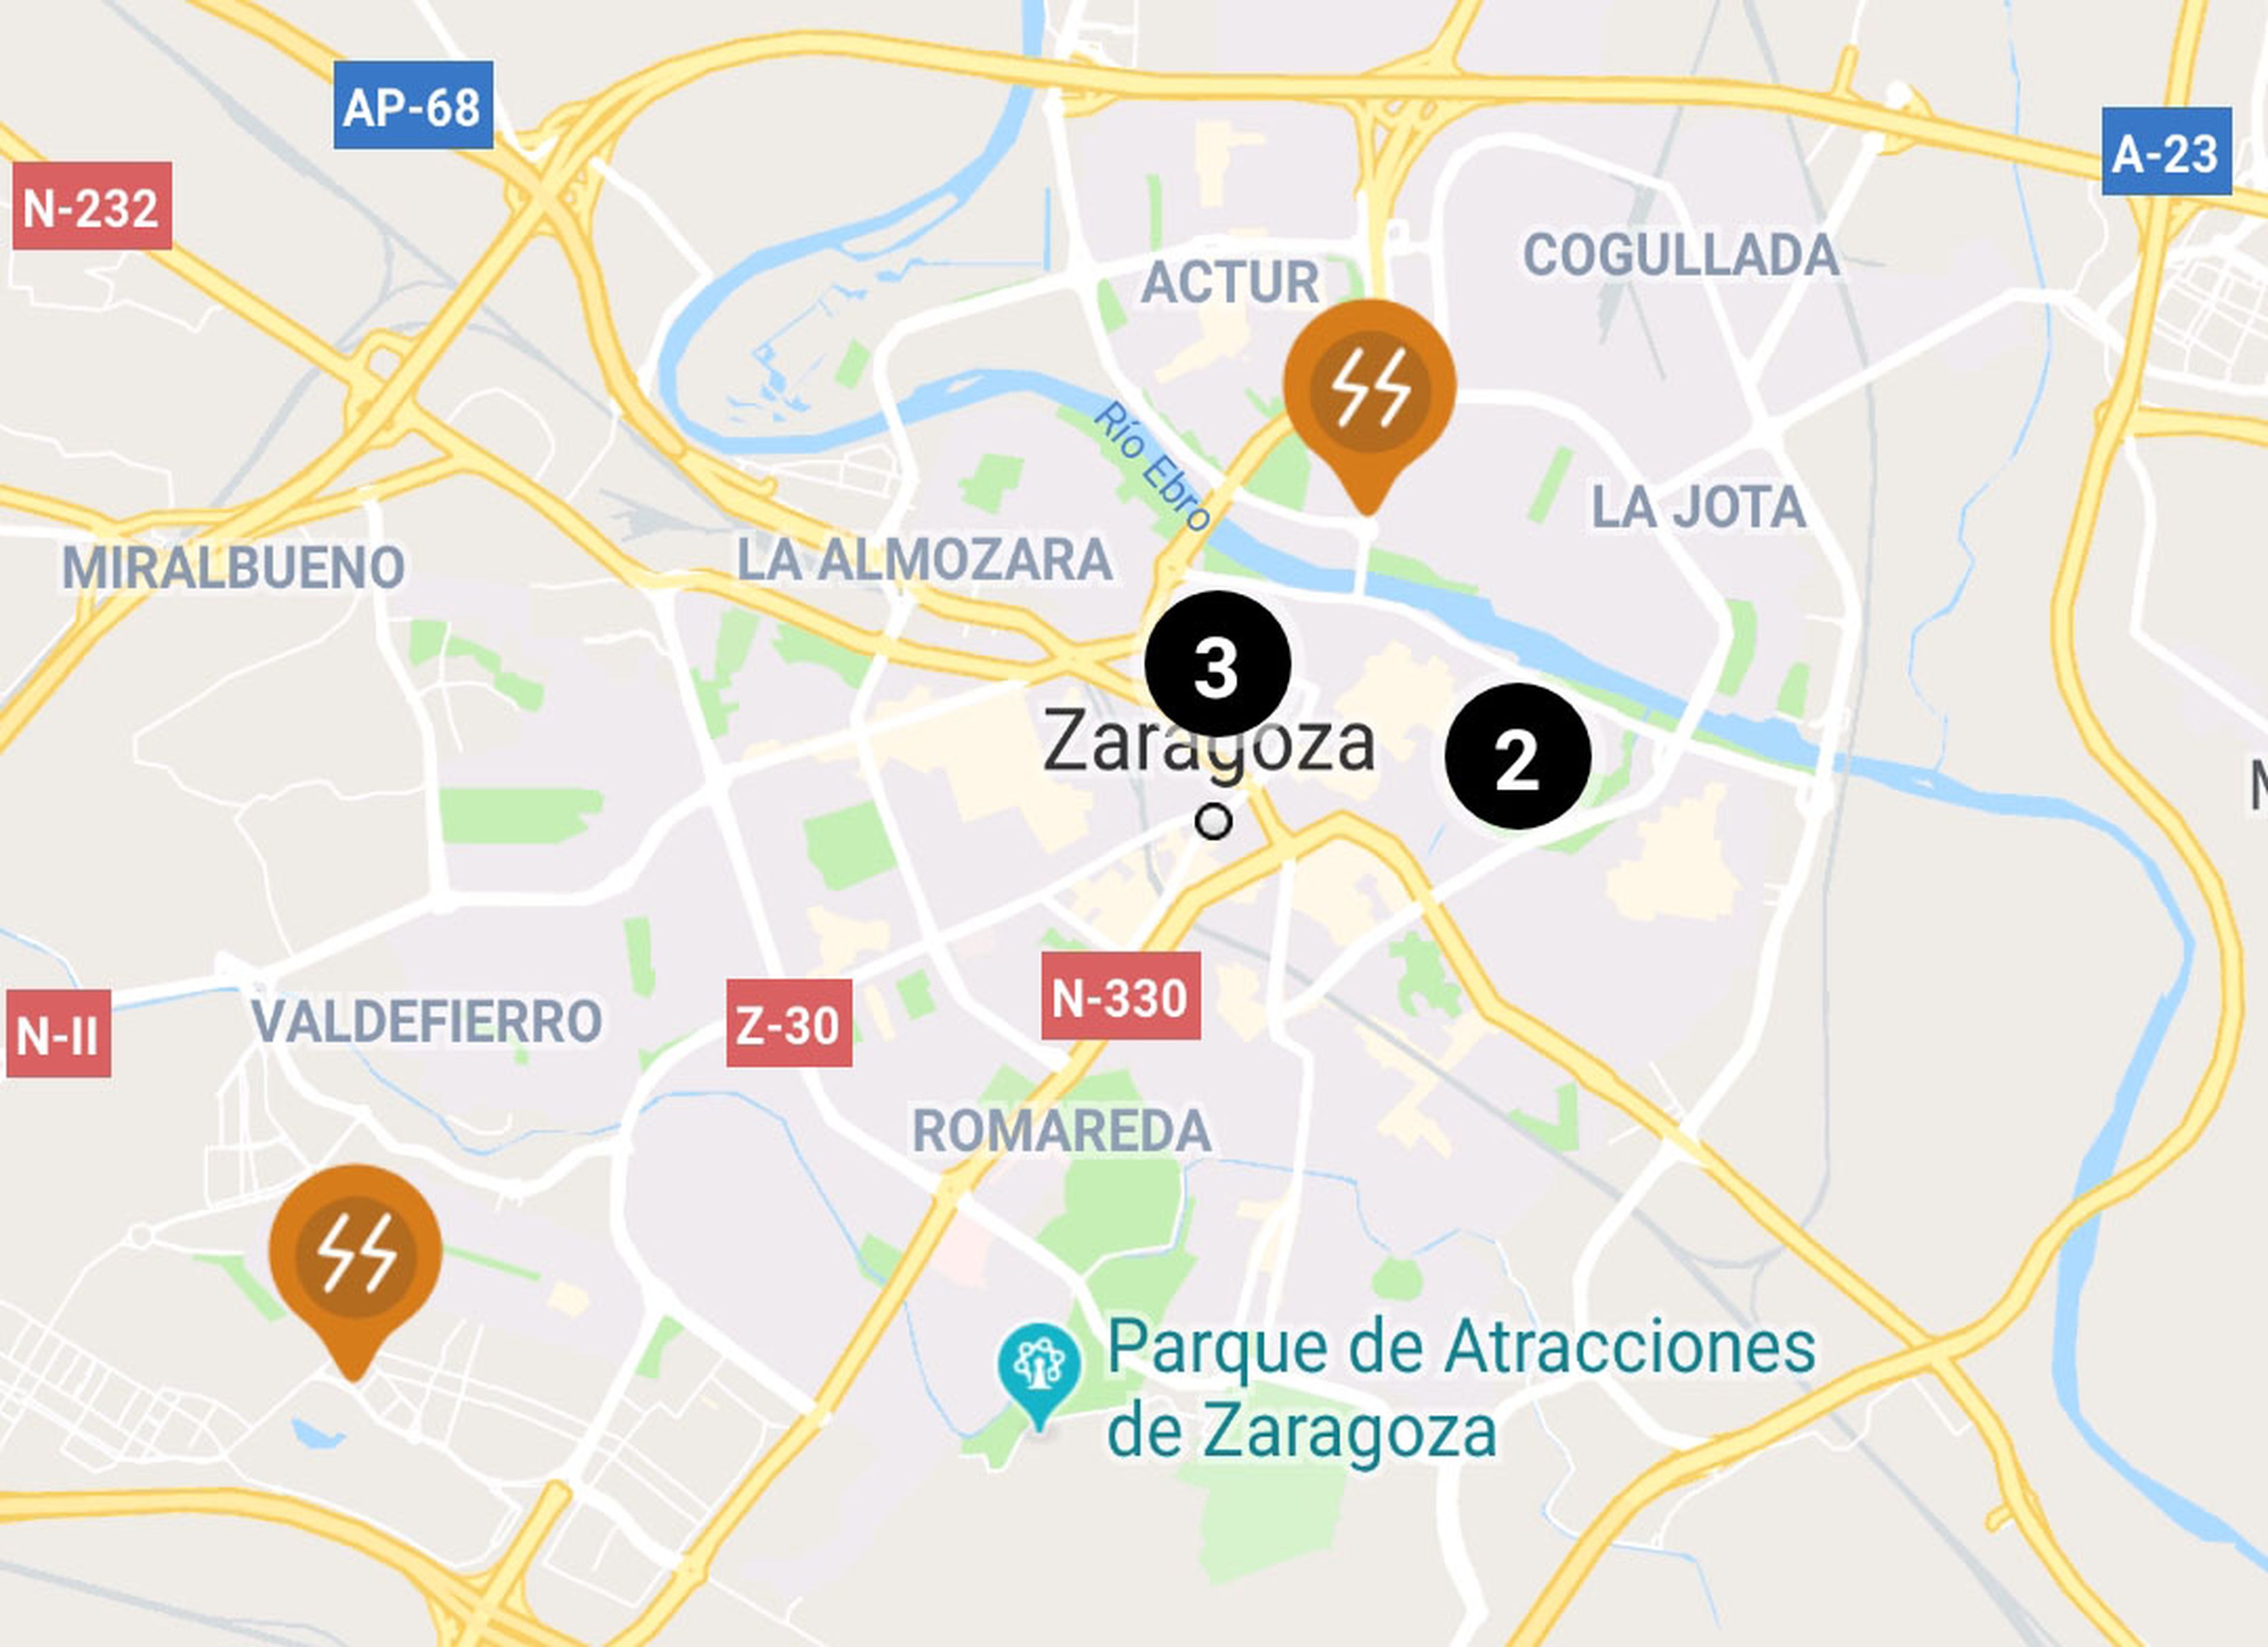 Los dos puntos de carga rápida (en naranja) que IBIL ofrece en Zaragoza